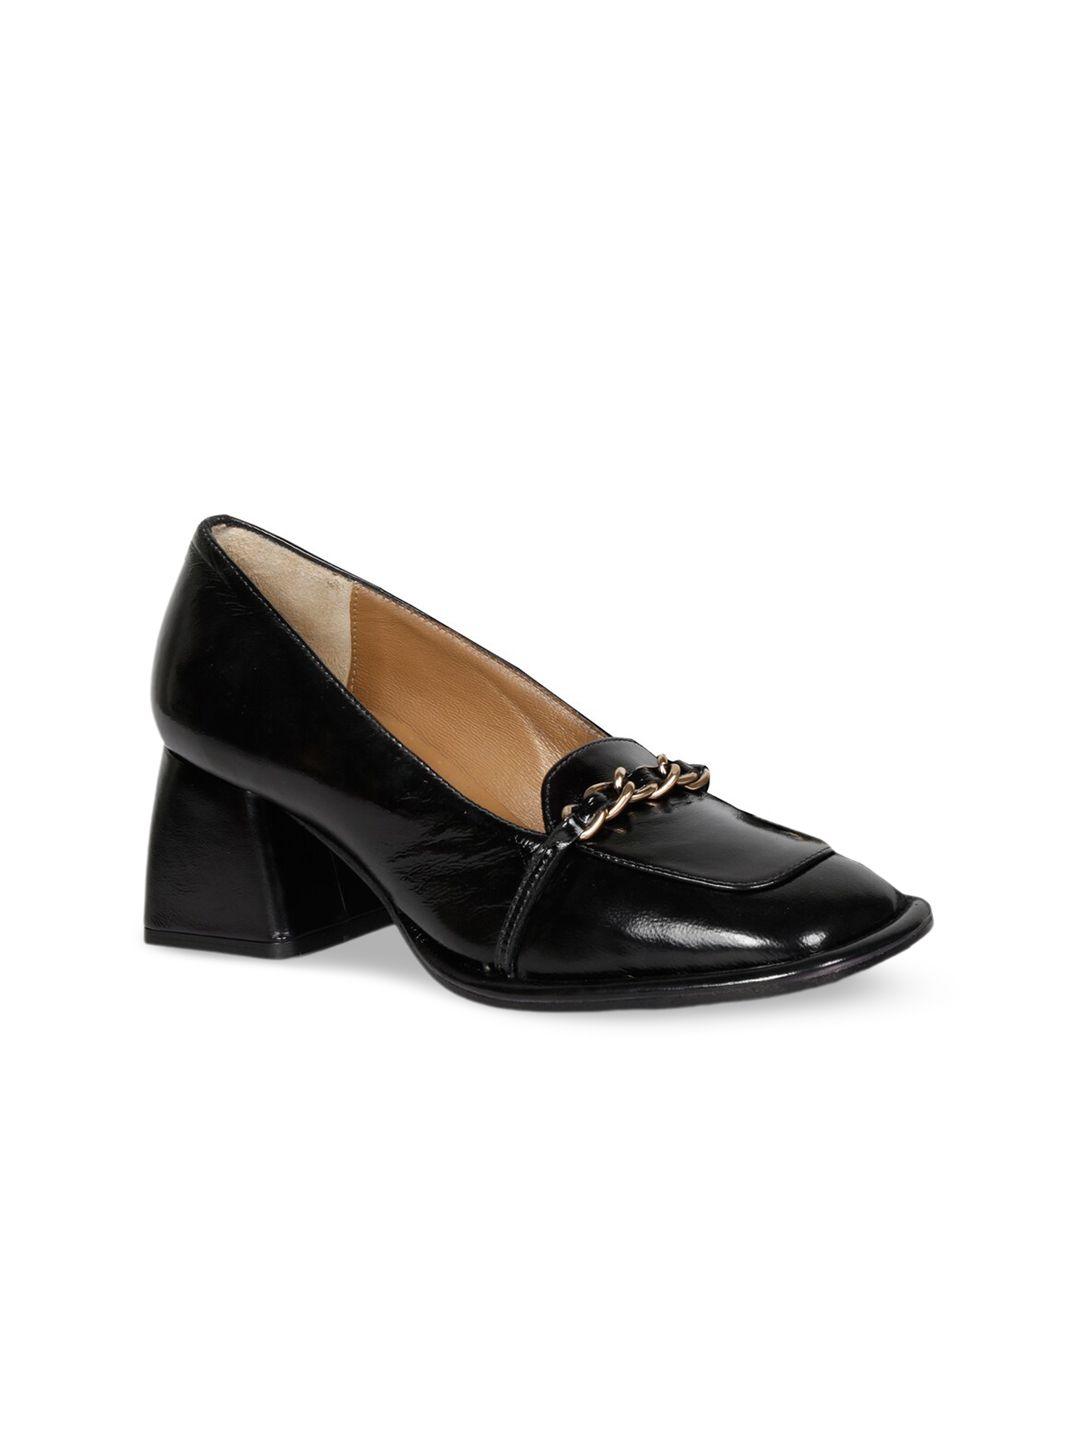 saint g black patent leather block heels pumps